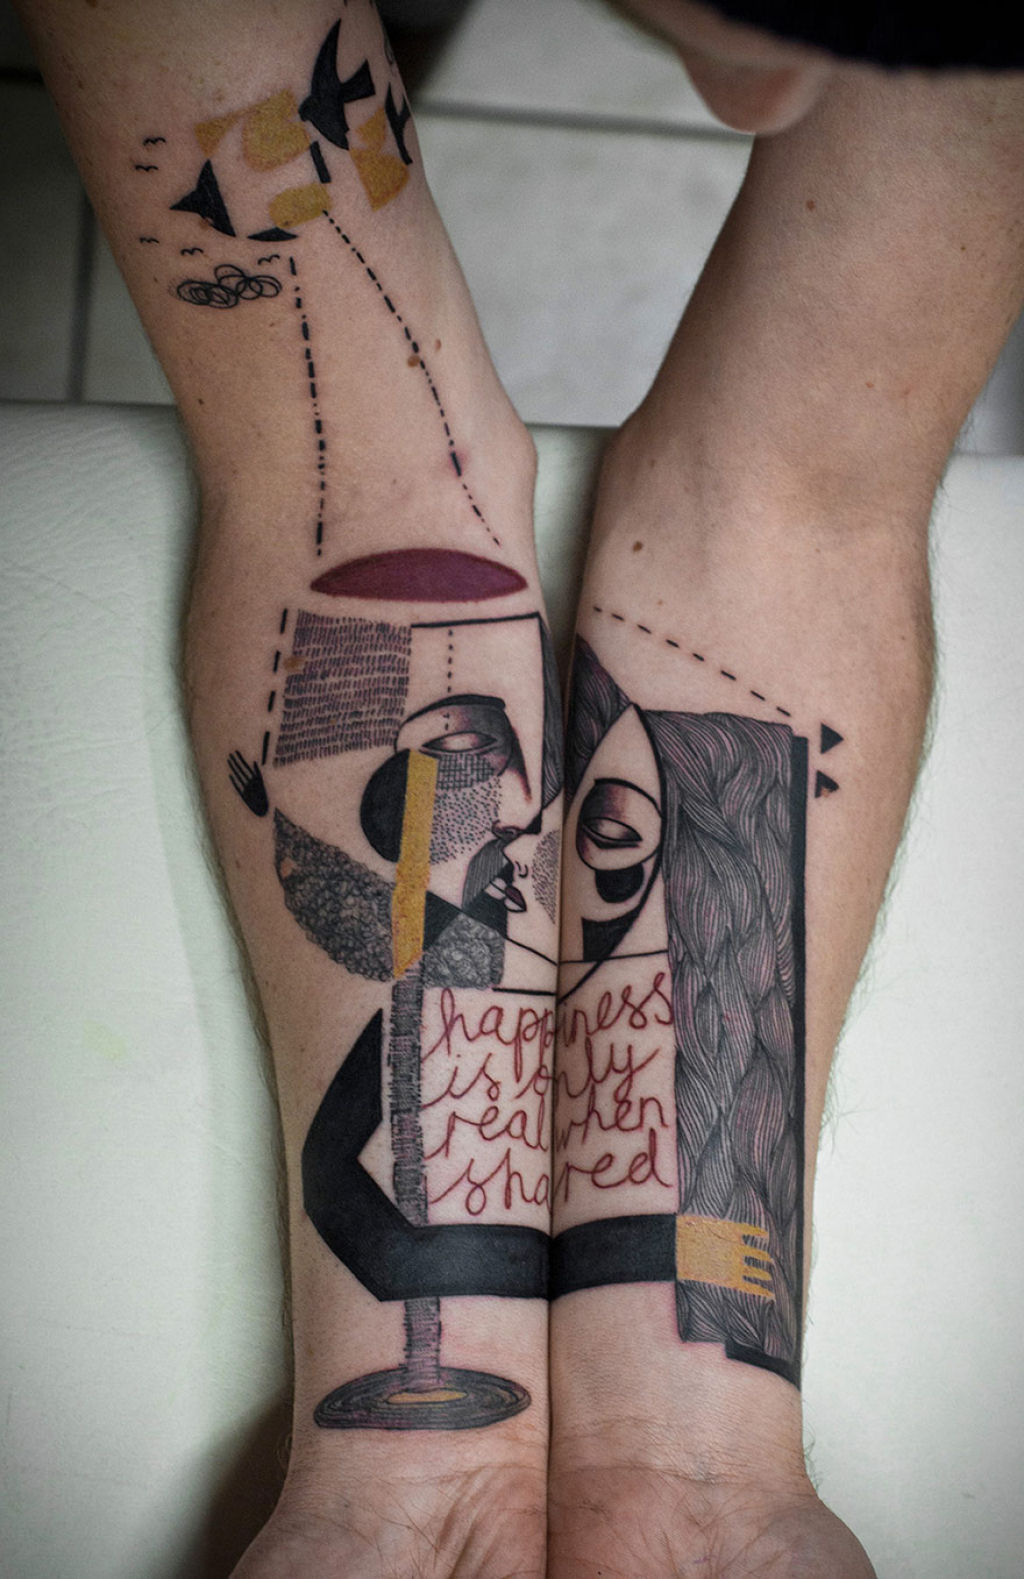 Duo de artistas cria tatuagens cubistas surreais baseadas nas histórias dos clientes 20